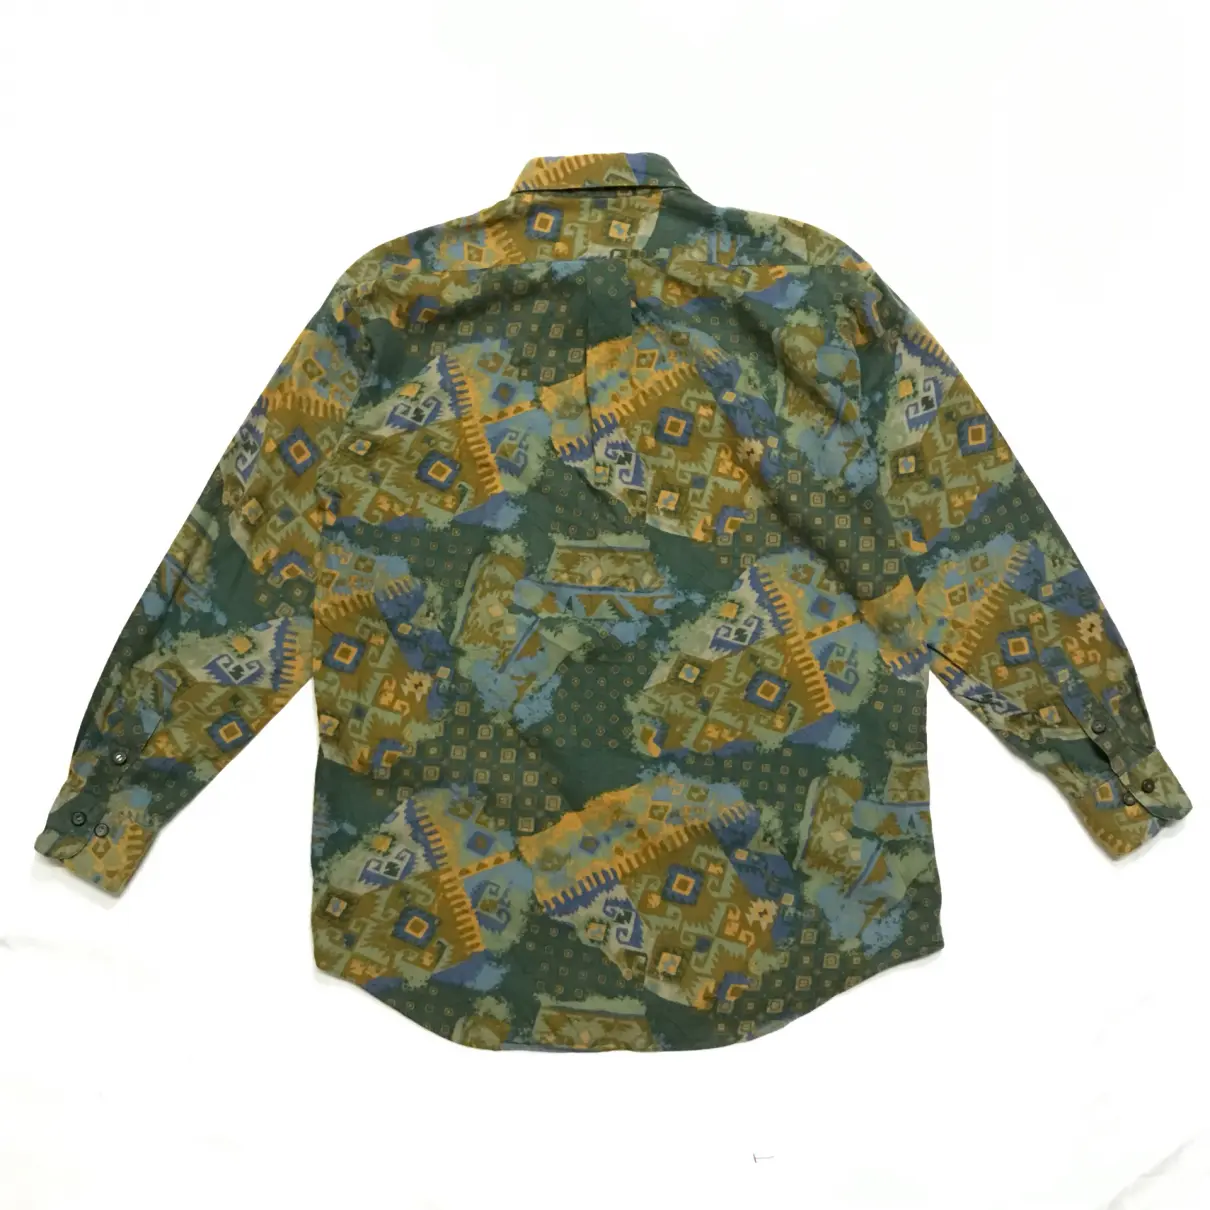 Buy Lanvin Shirt online - Vintage